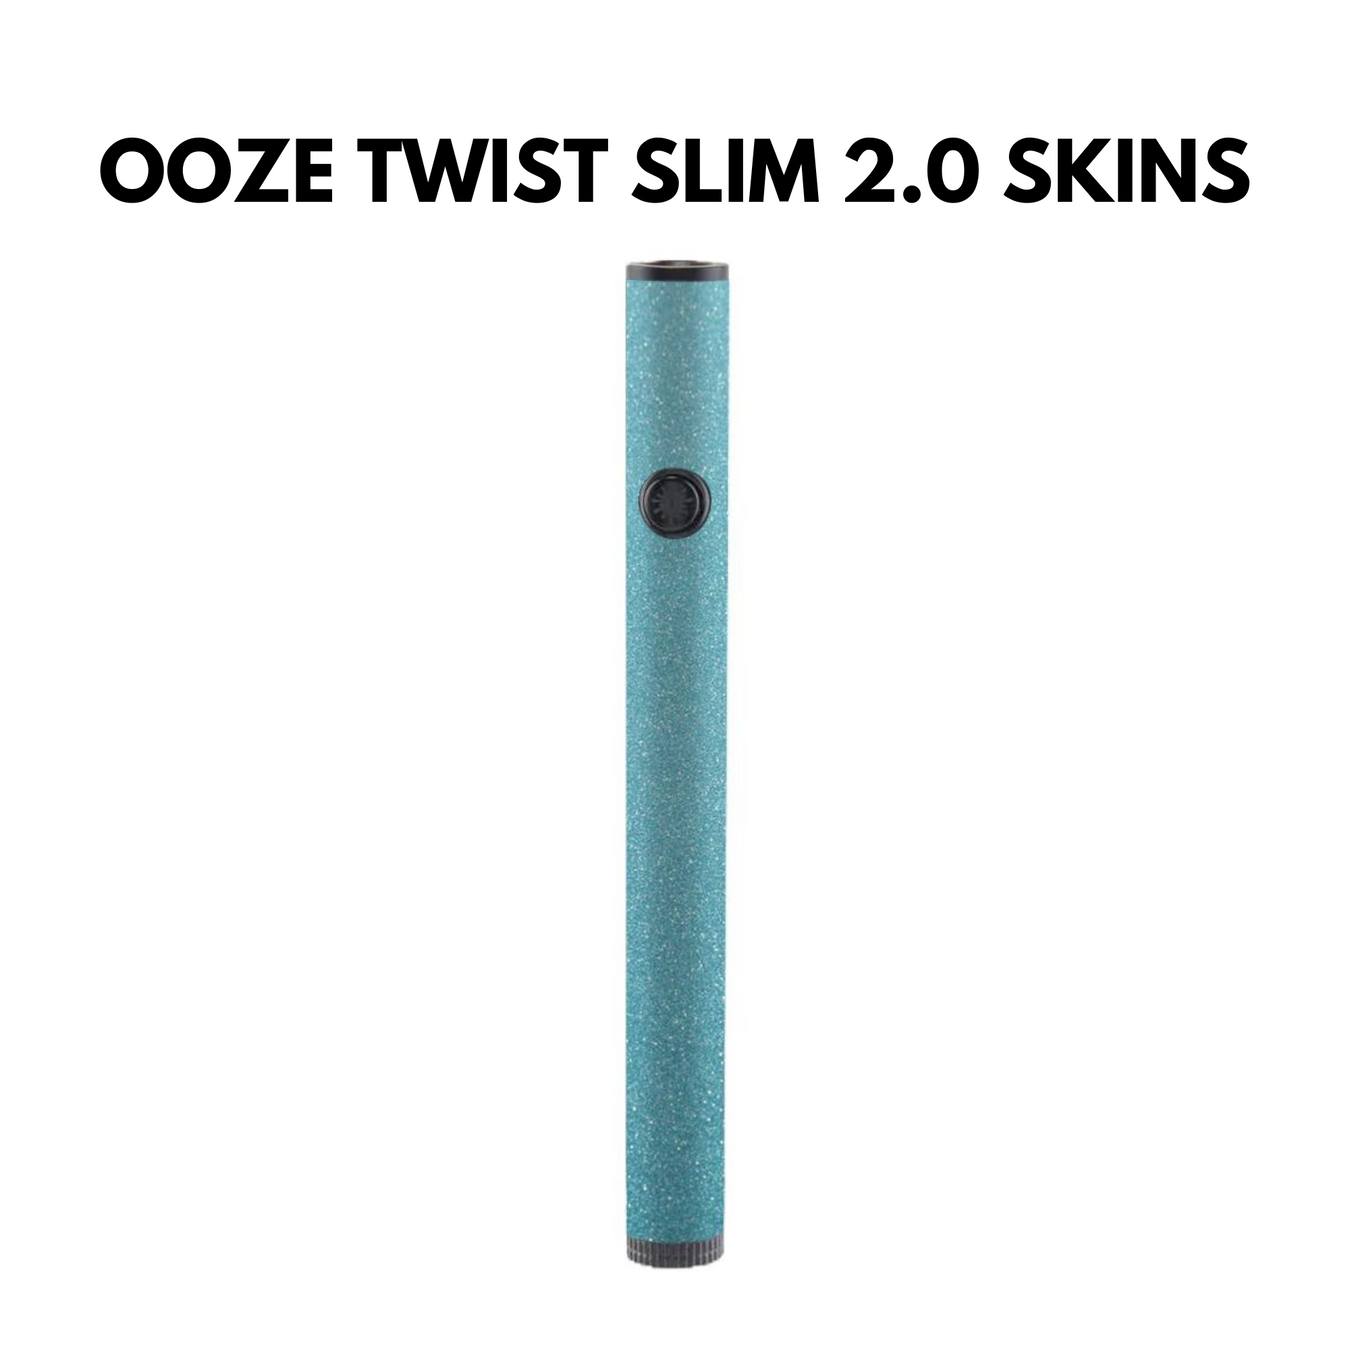 Ooze Twist Slim Pen 2.0 Skins